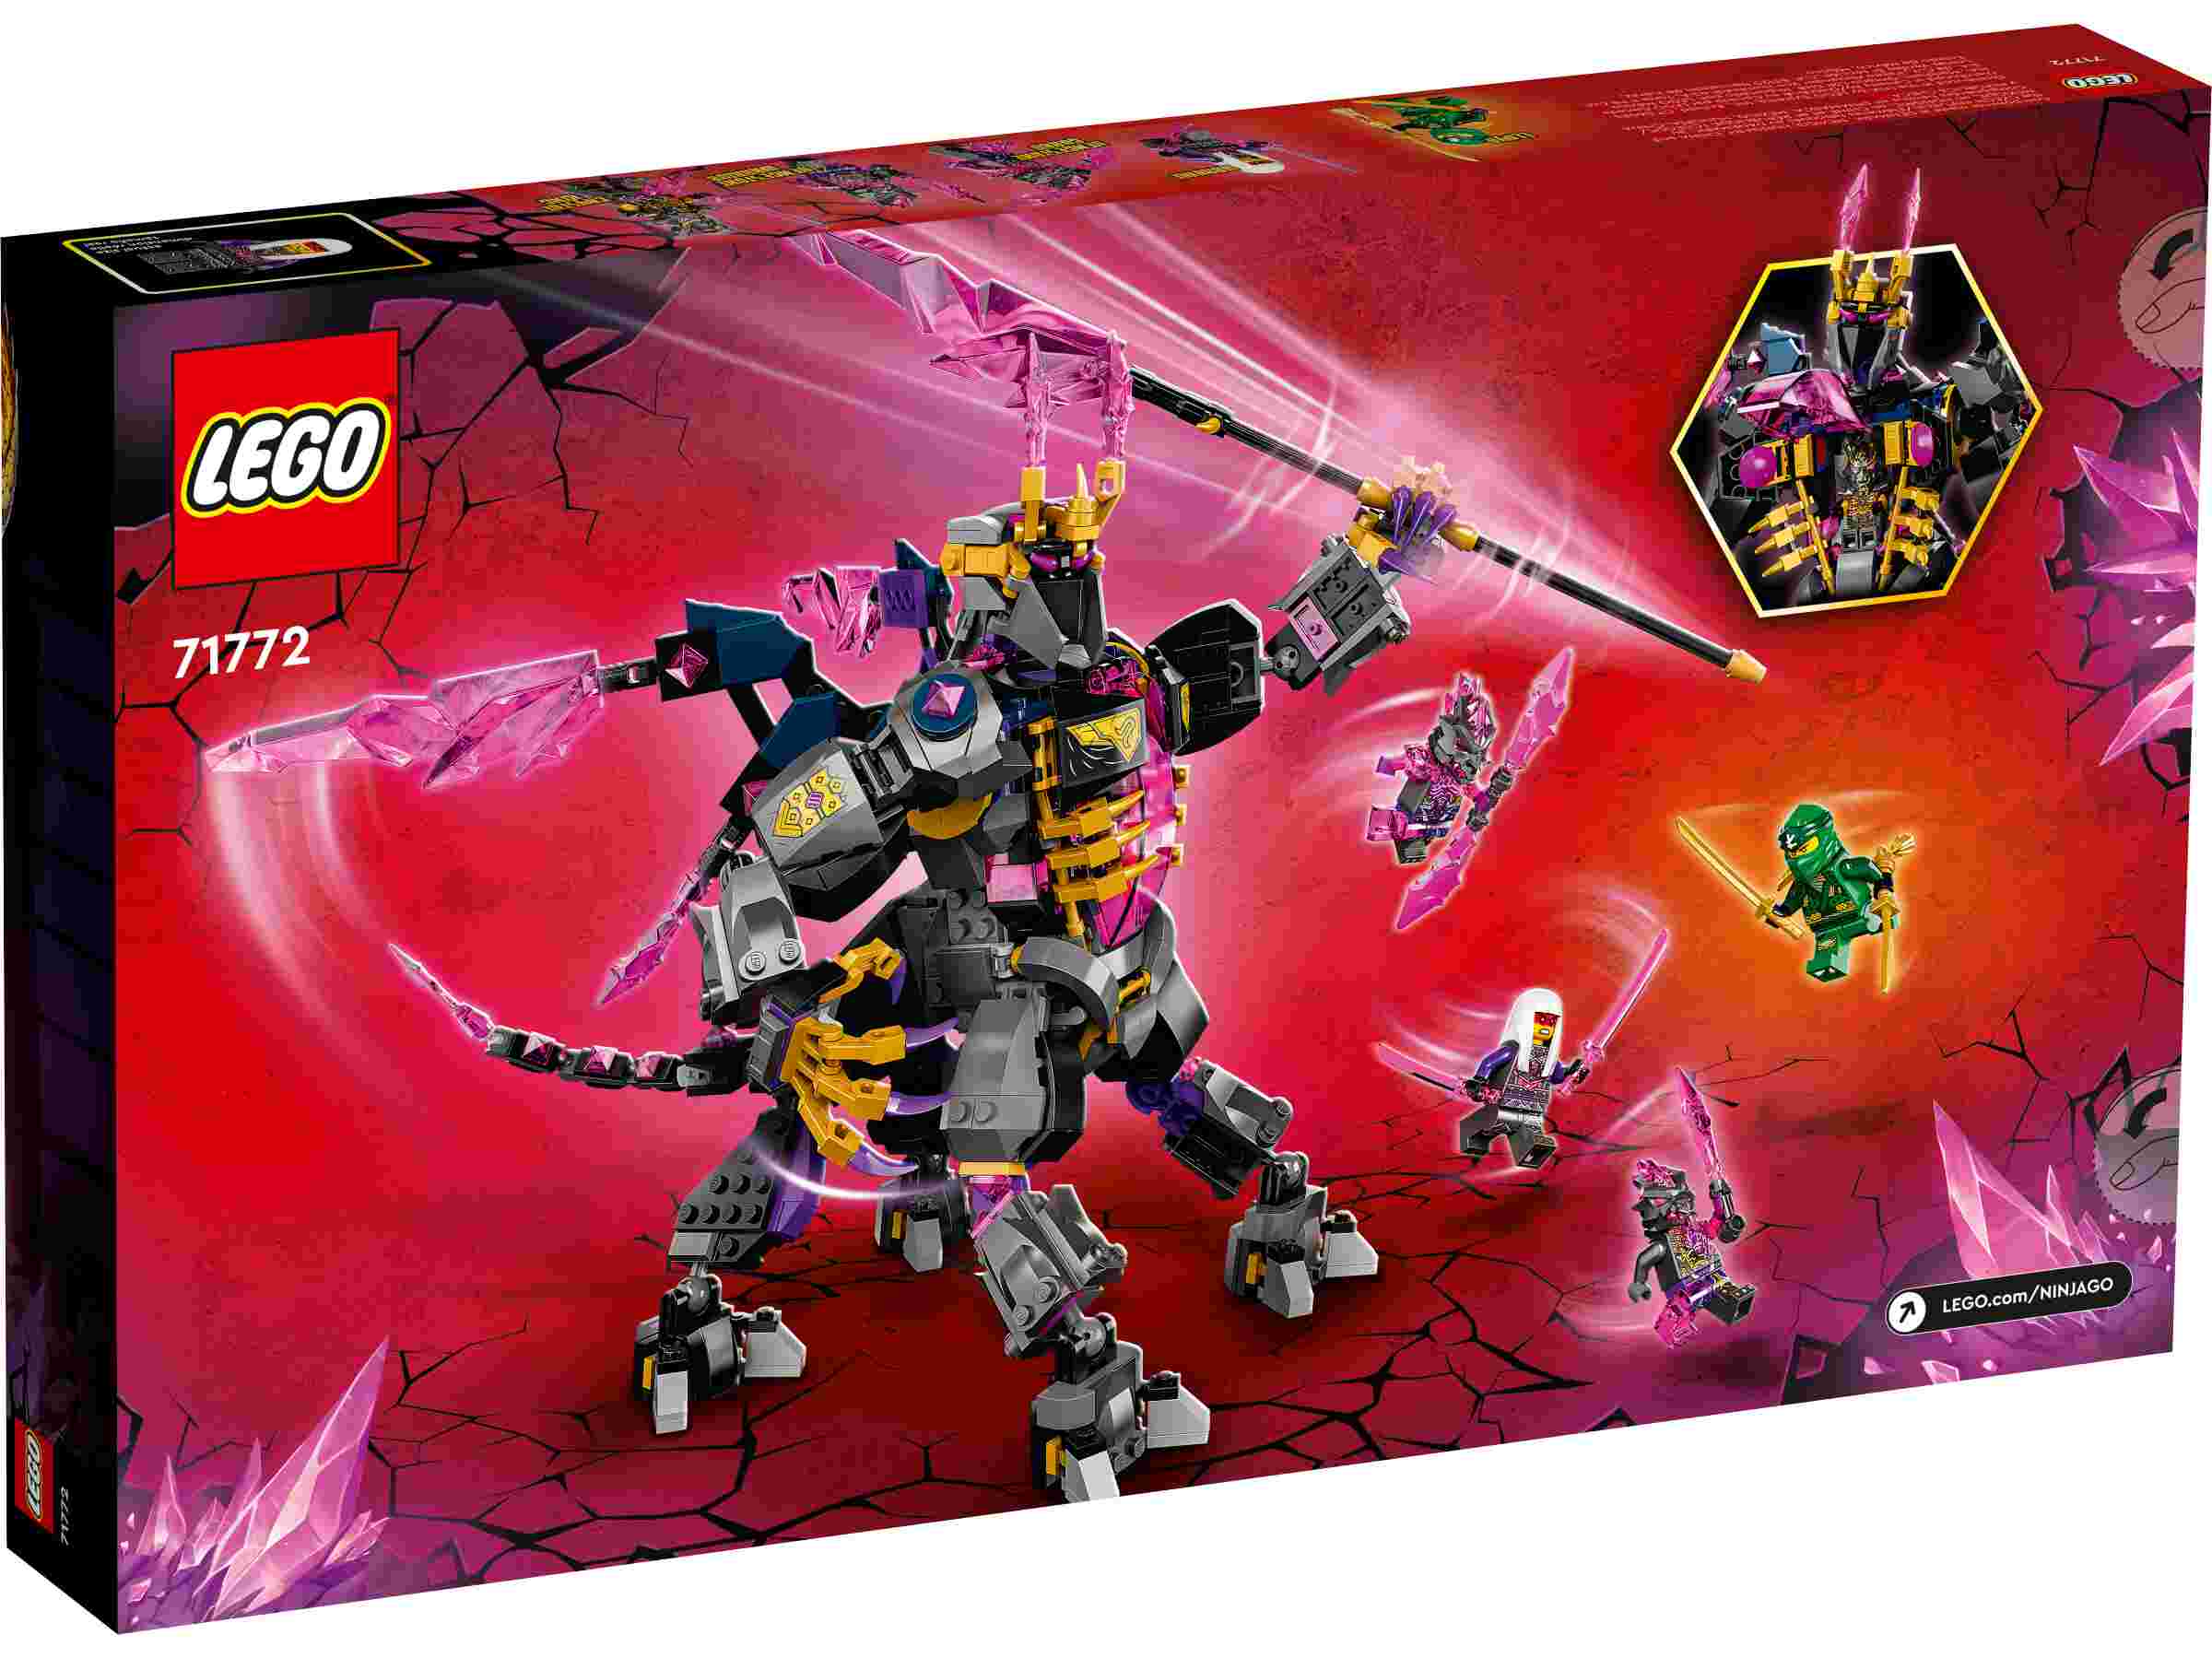 LEGO 71772 NINJAGO Der Kristallkönig mit 5 Minifiguren, Lloyd